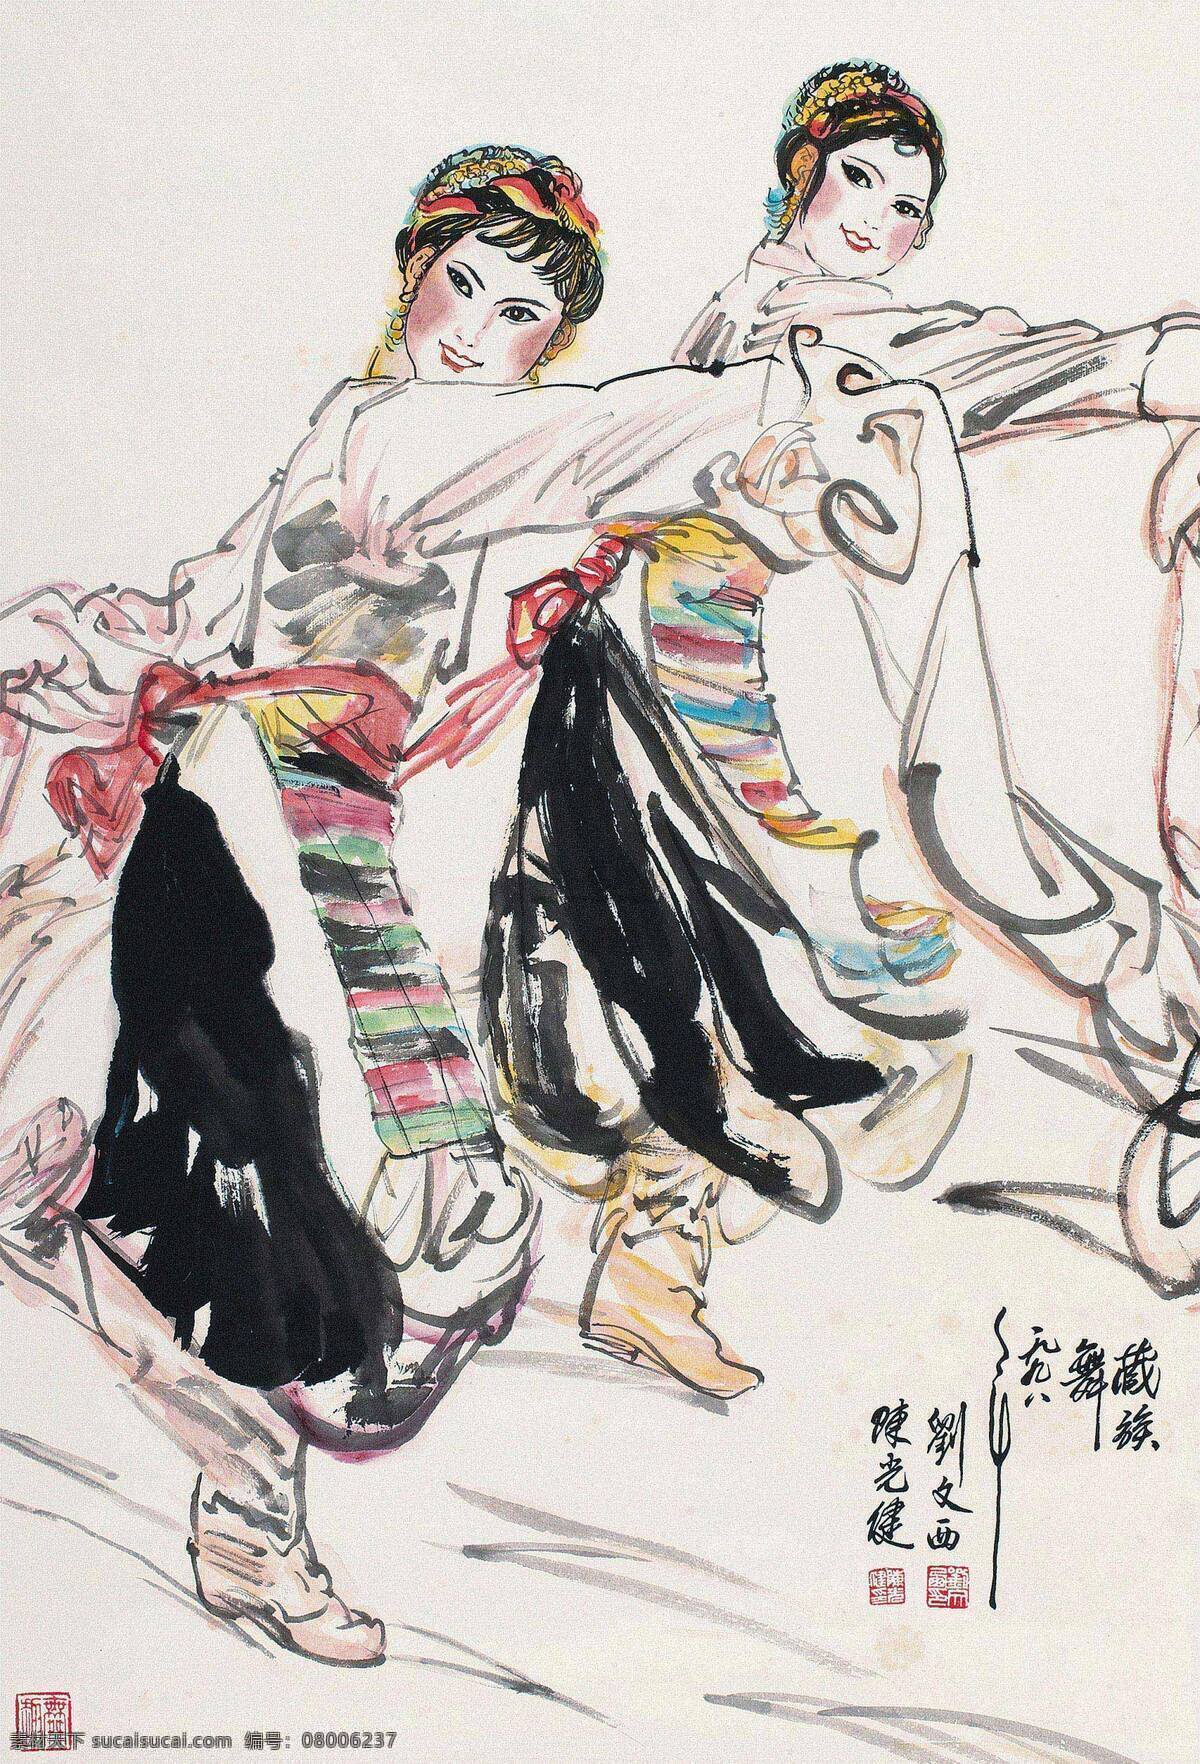 藏族 舞蹈 中国画 作品 水墨人物画 少数民族风情 藏族文化 民族舞蹈 刘文西 陈光健 广告装饰设计 文化艺术